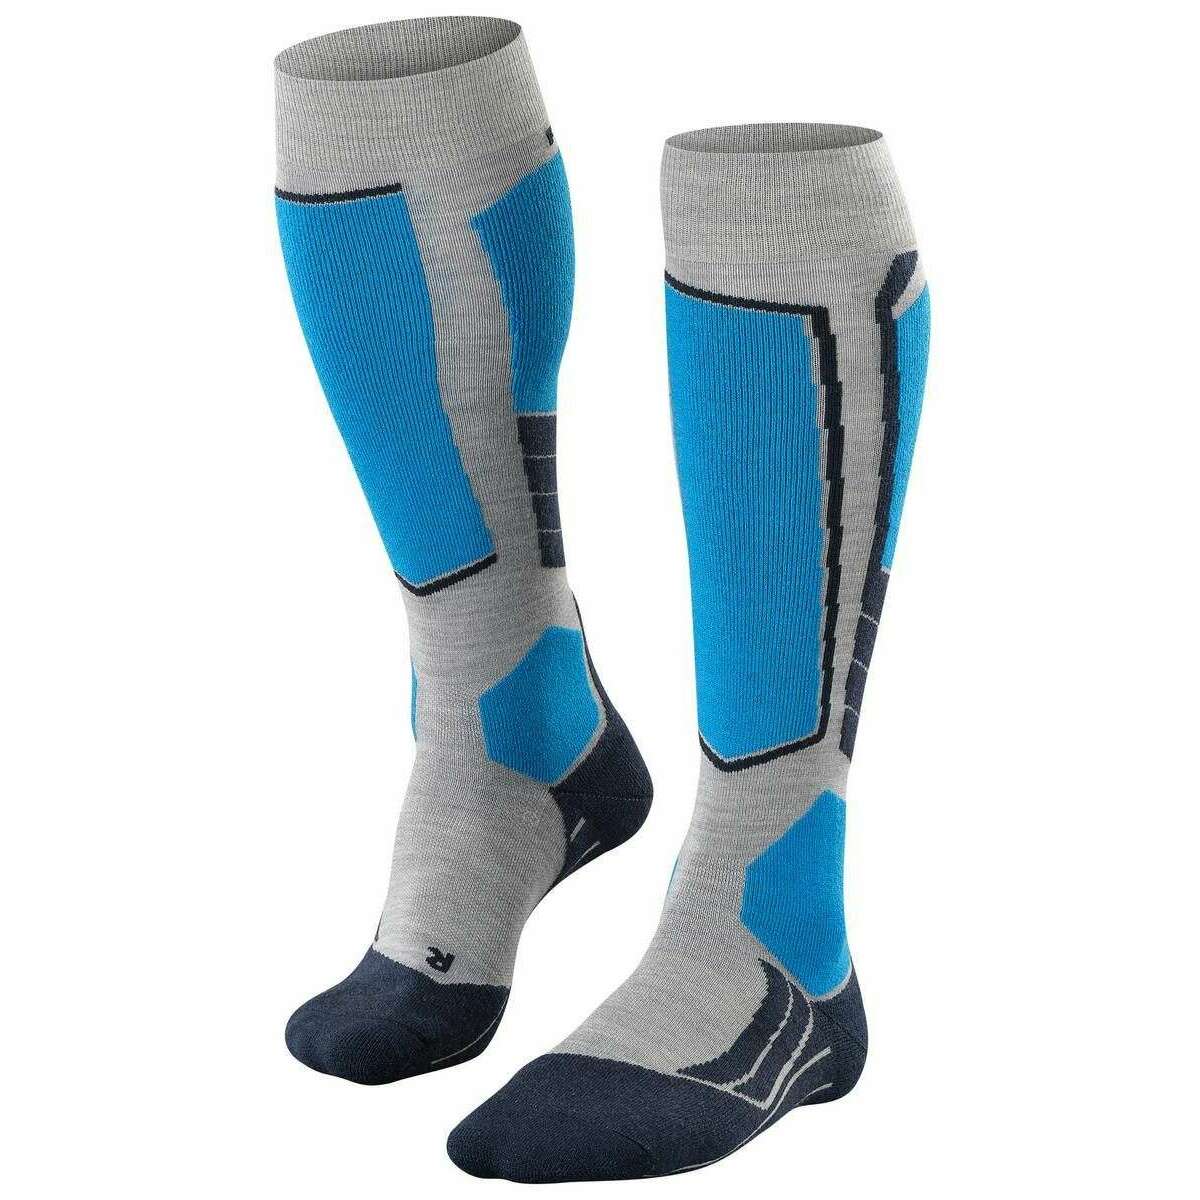 Falke SK2 Intermediate Wool Knee High Socks - Light Grey